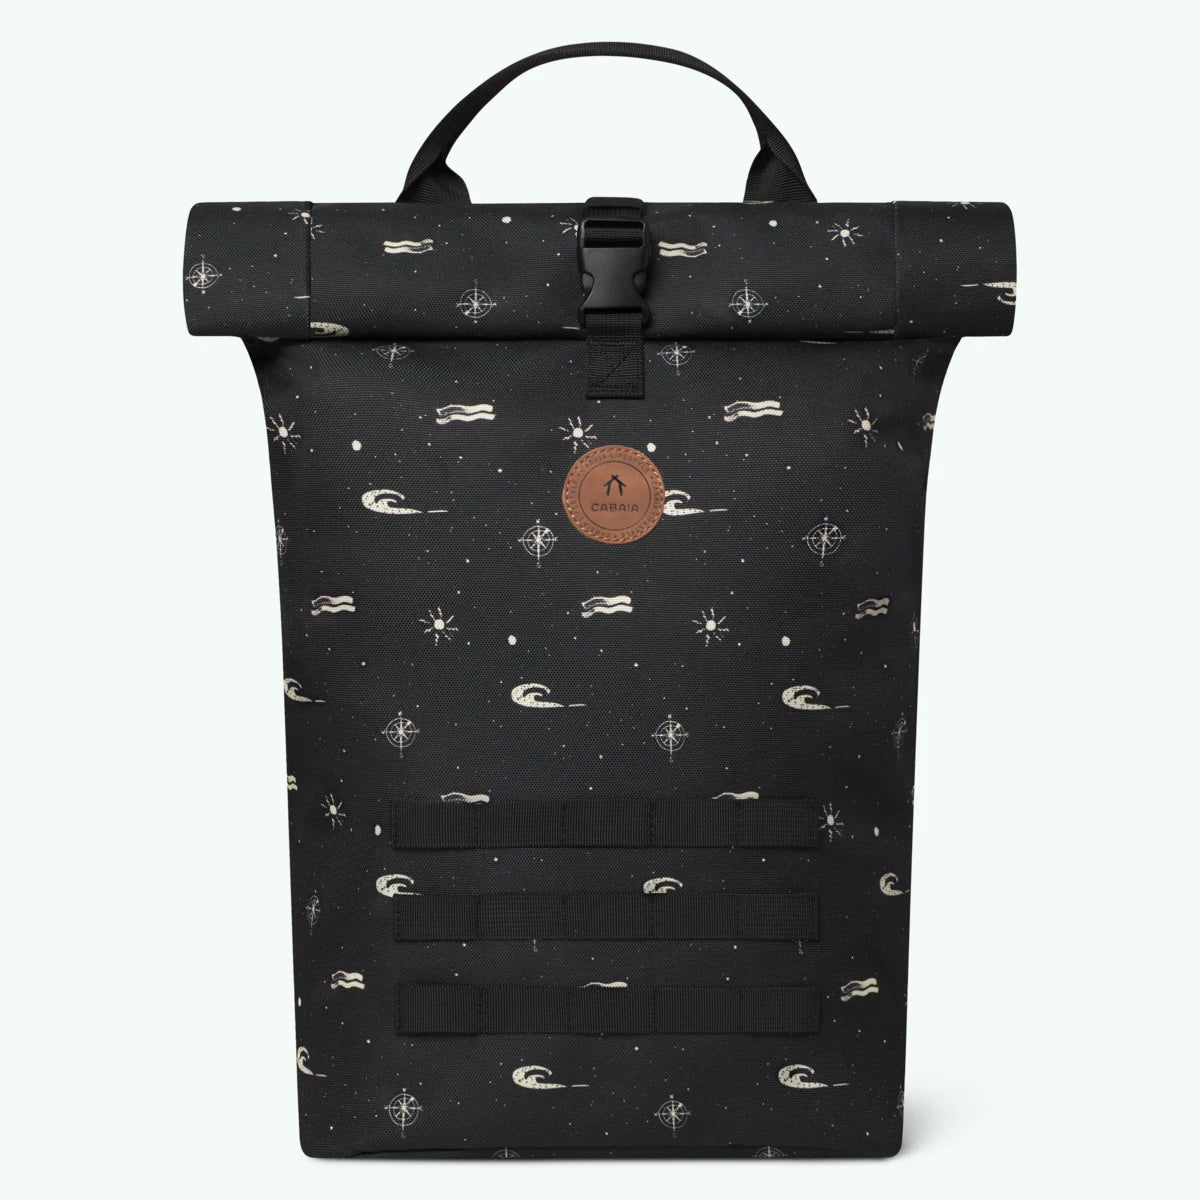 starter-black-and-white-medium-backpack